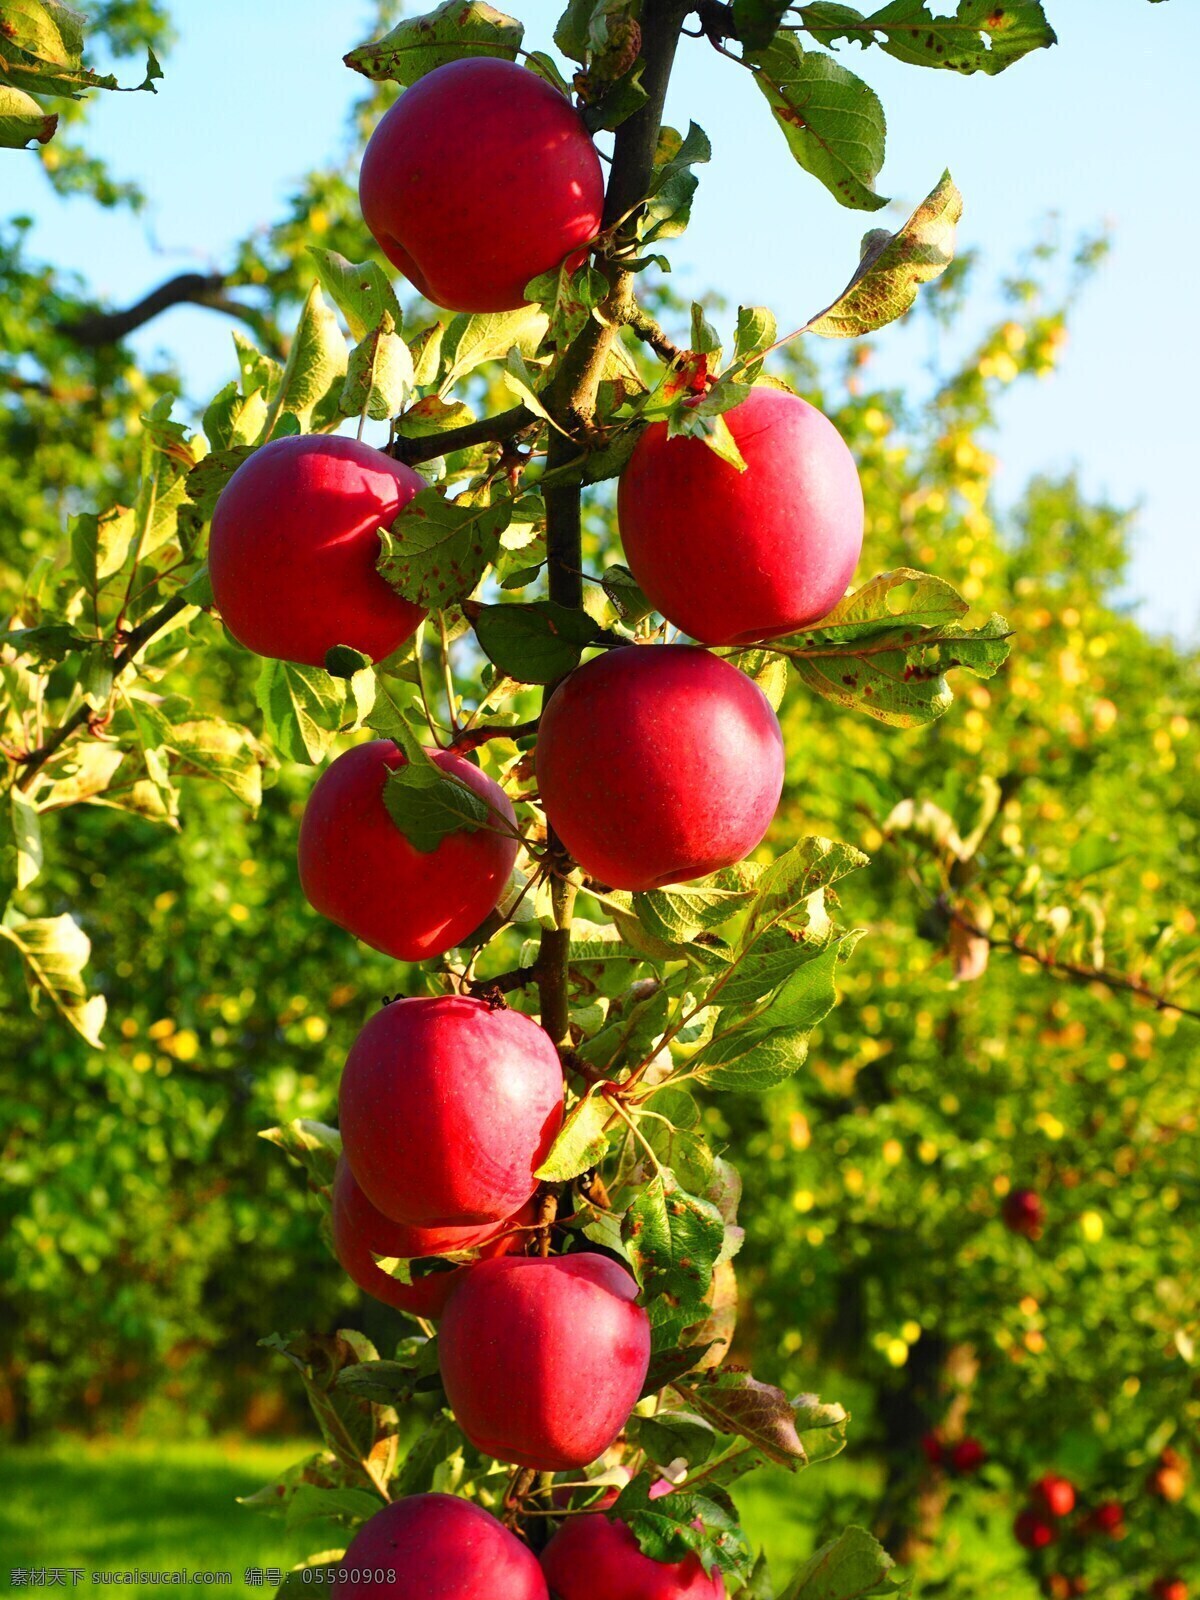 树上苹果 苹果 枝头上 红富士 苹果树 苹果园 富士苹果 新鲜水果 丰收的果园 红富士果园 丰收的苹果园 结满果实 红苹果 糖心苹果 硕果累累 苹果挂满枝头 生物世界 水果